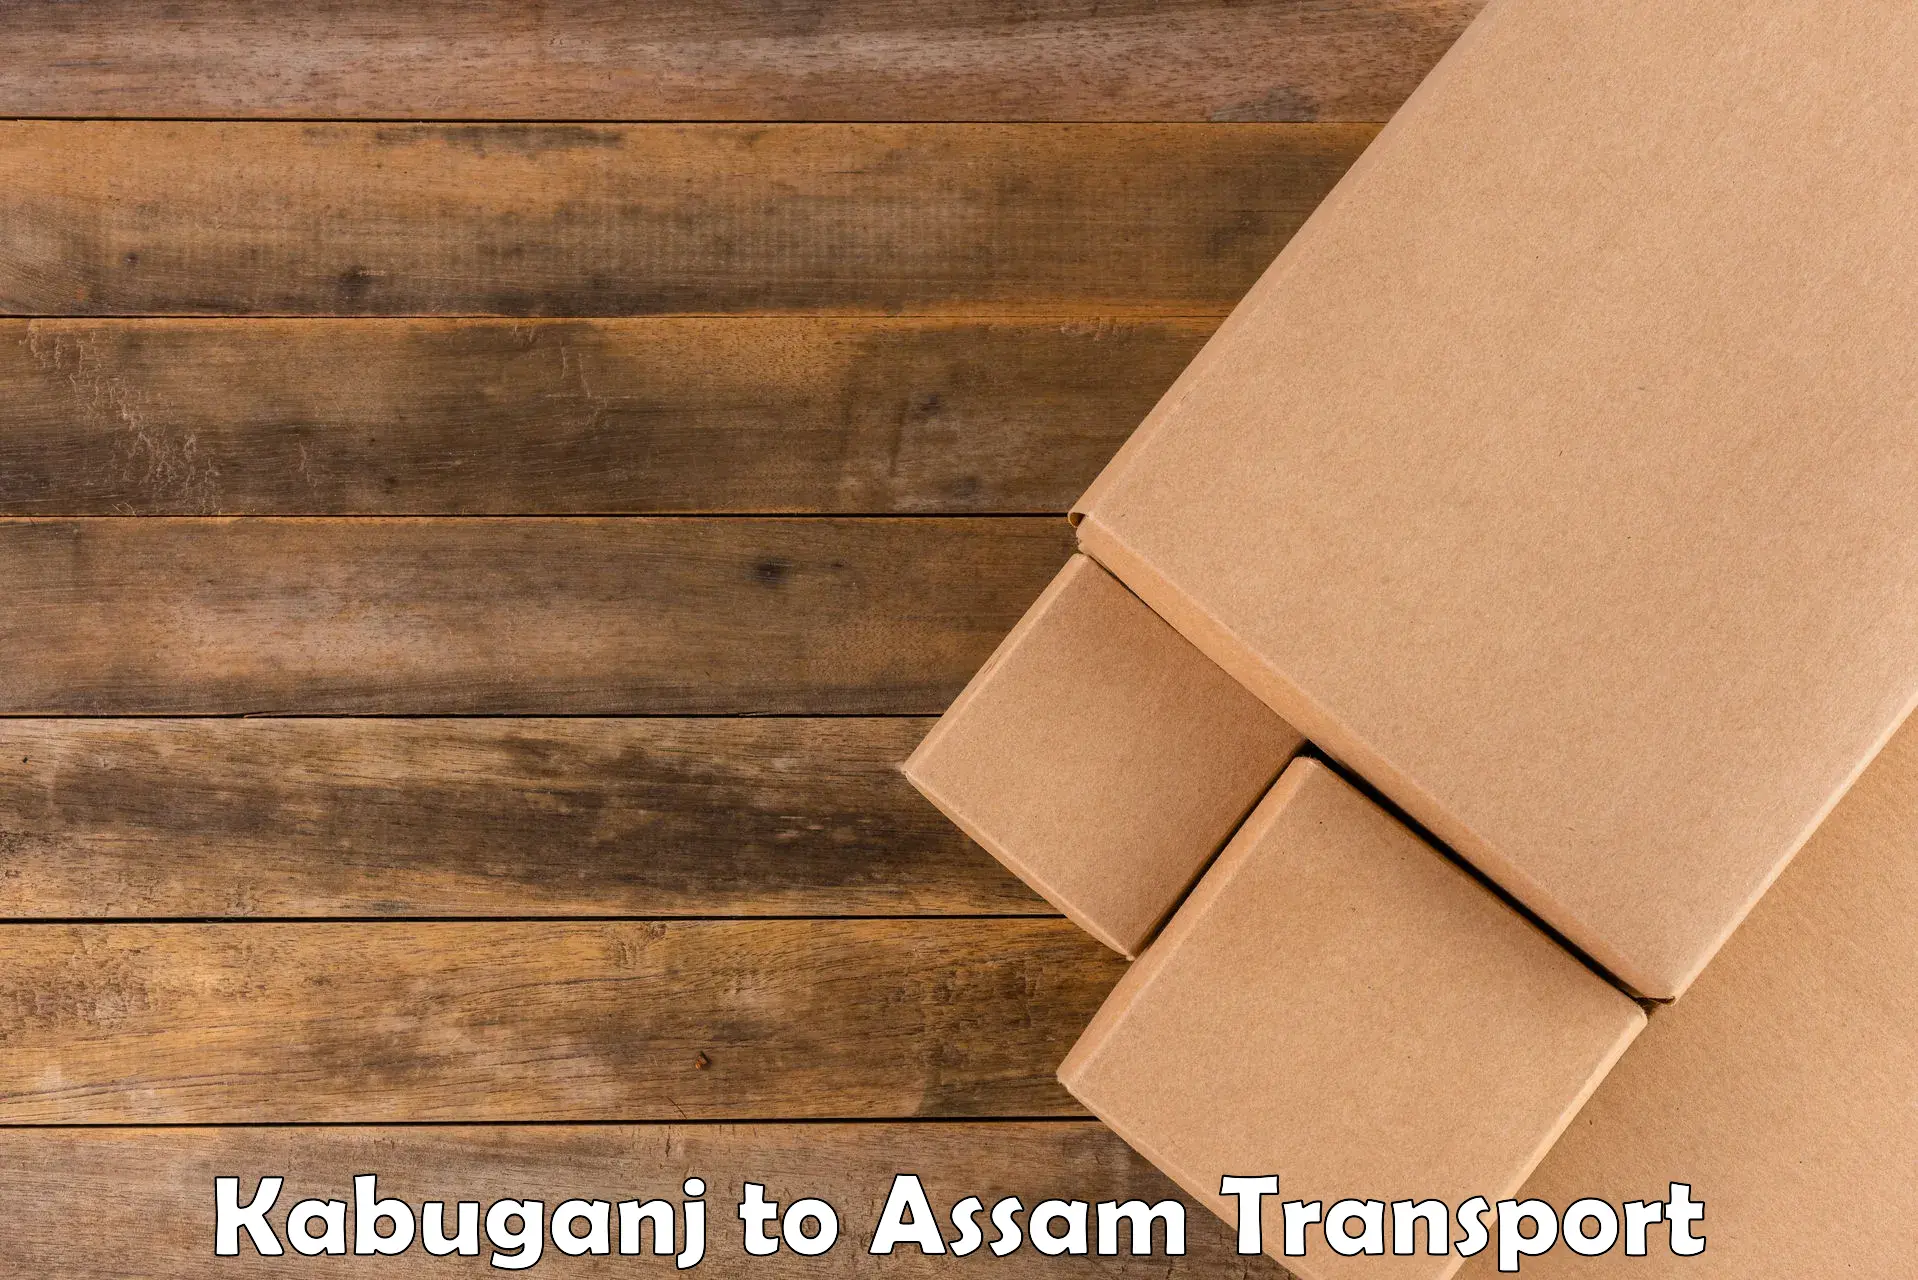 Daily parcel service transport Kabuganj to Assam